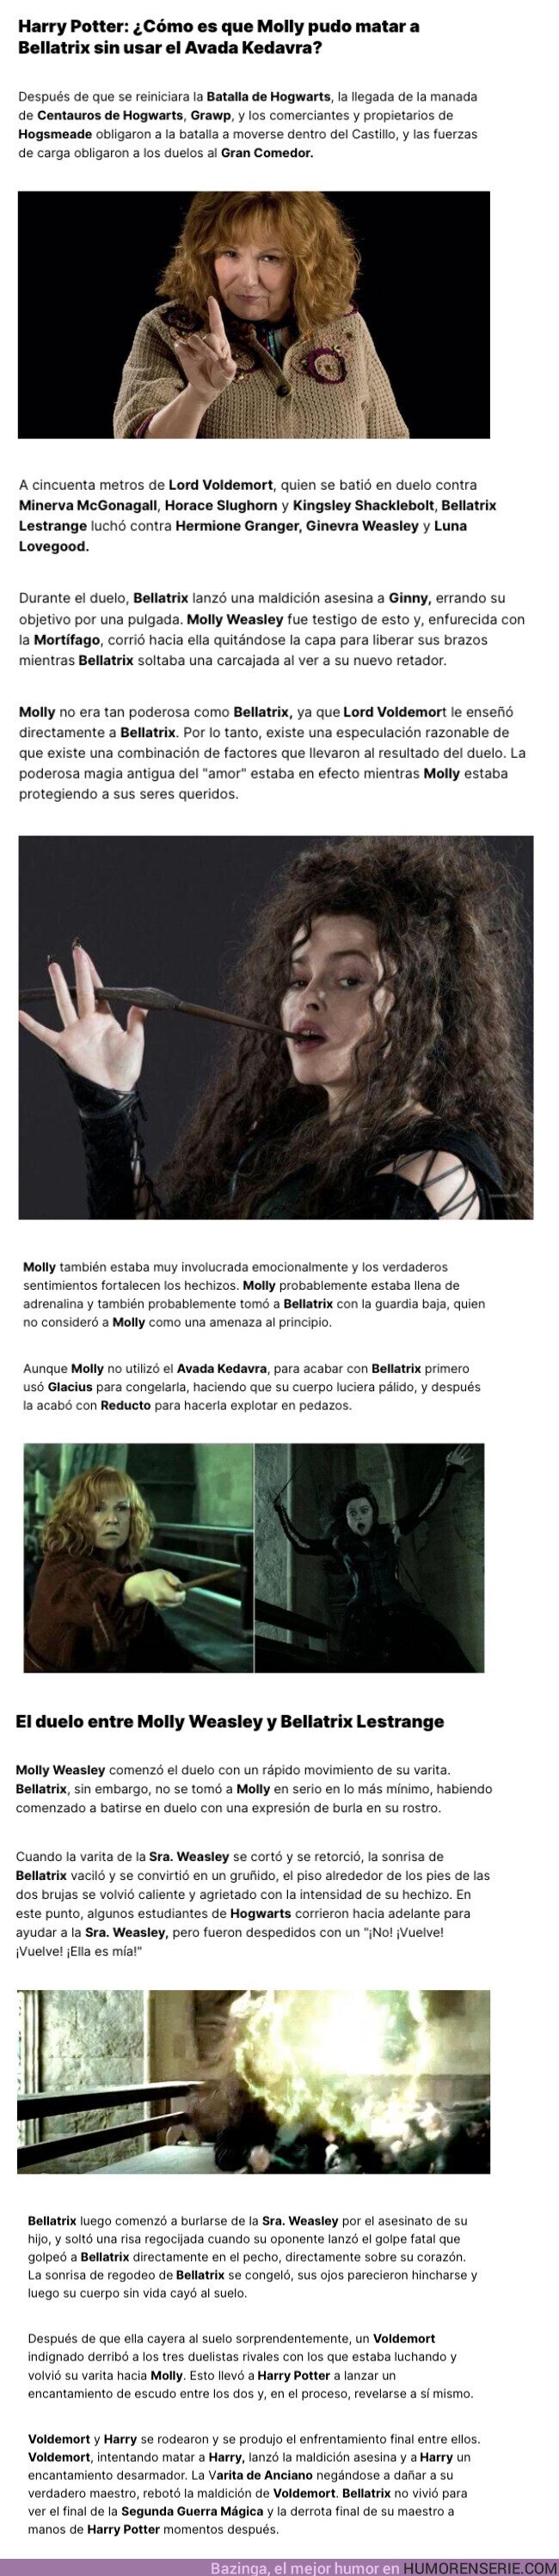 123954 - GALERÍA: Harry Potter: ¿Cómo es que Molly pudo matar a Bellatrix sin usar el Avada Kedavra?